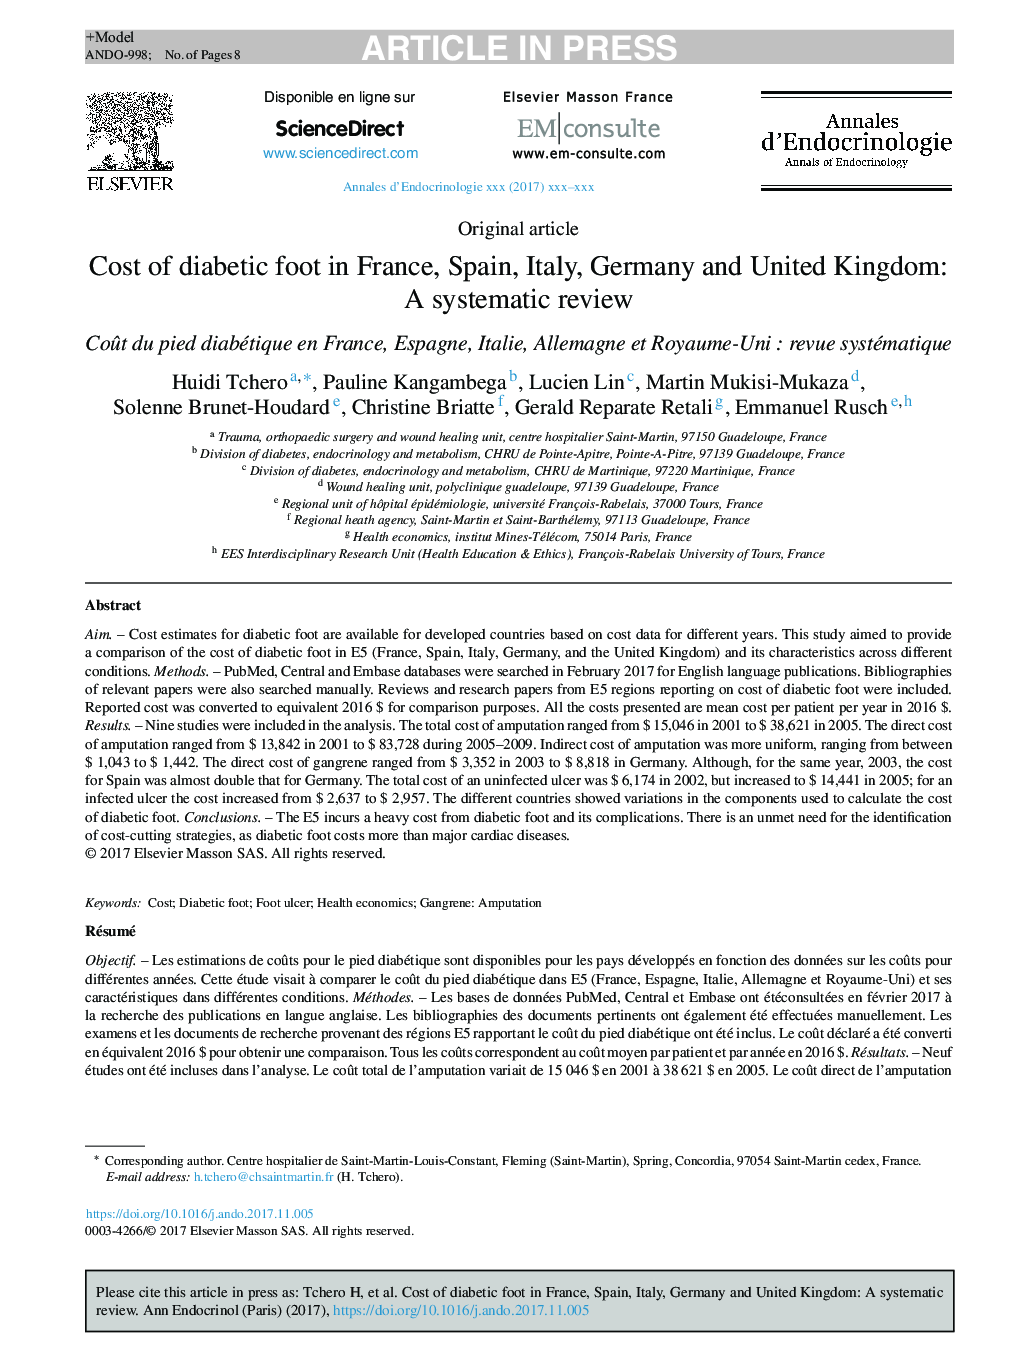 هزینه های پای دیابتی در فرانسه، اسپانیا، ایتالیا، آلمان و بریتانیا: بررسی سیستماتیک